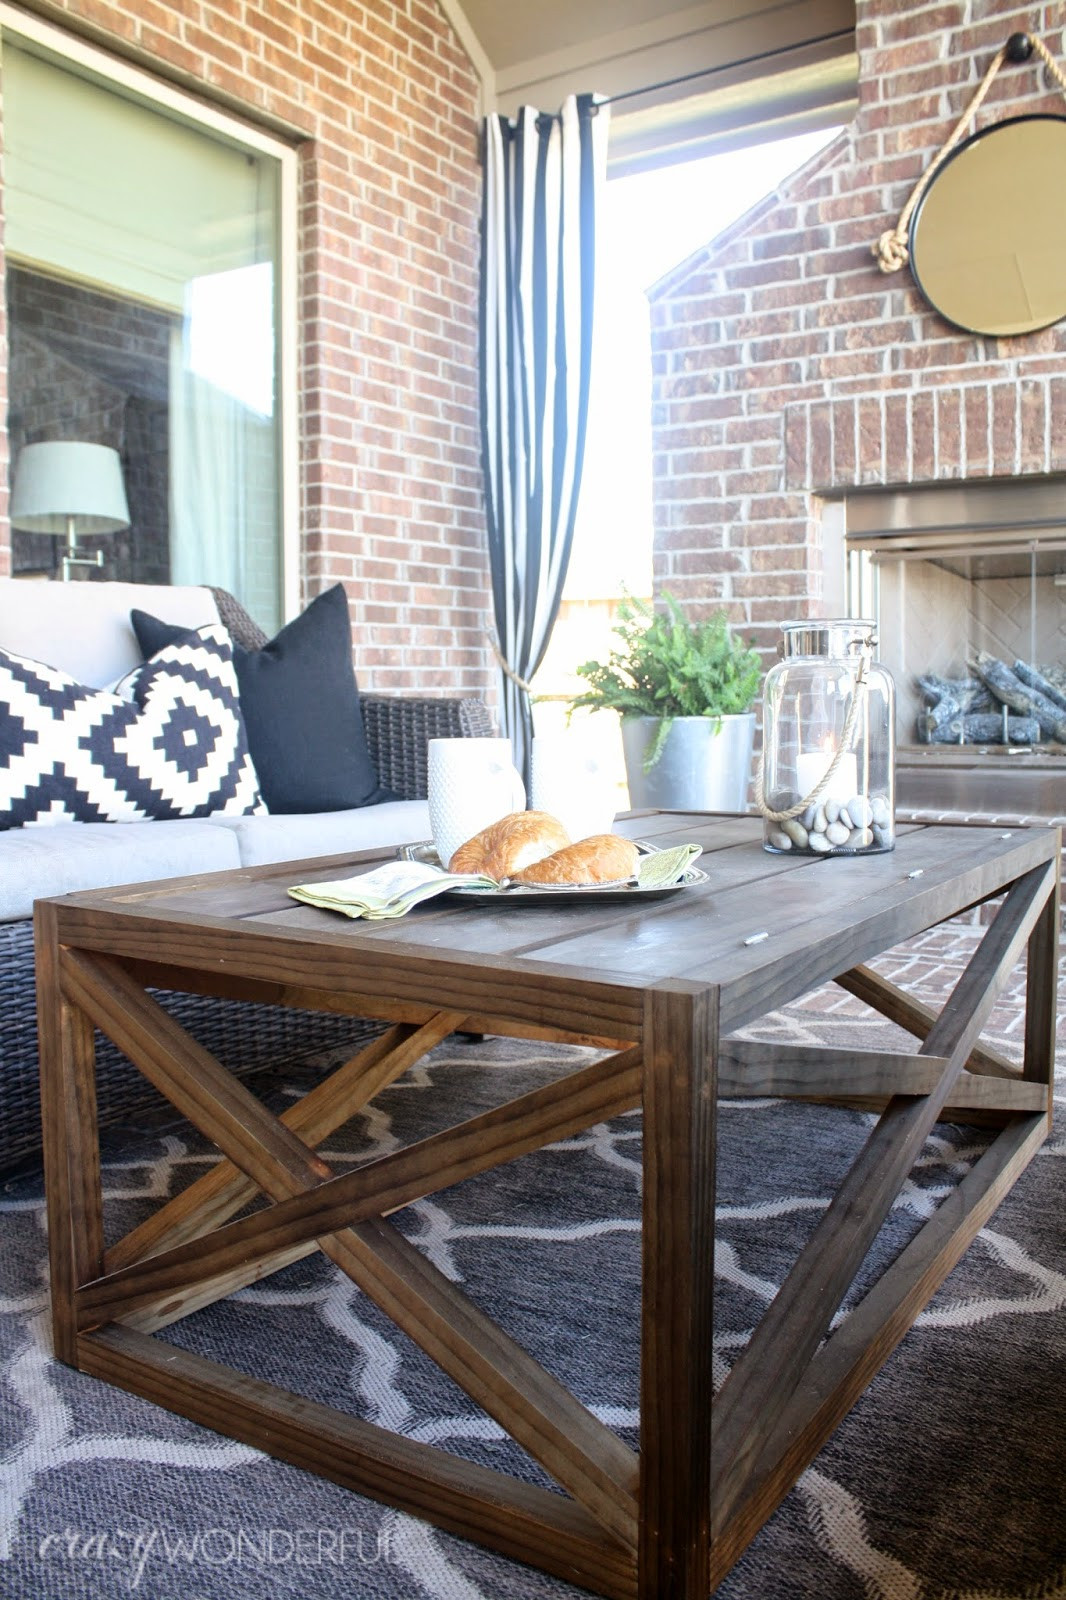 DIY Outdoor Coffee Table
 DIY outdoor coffee table